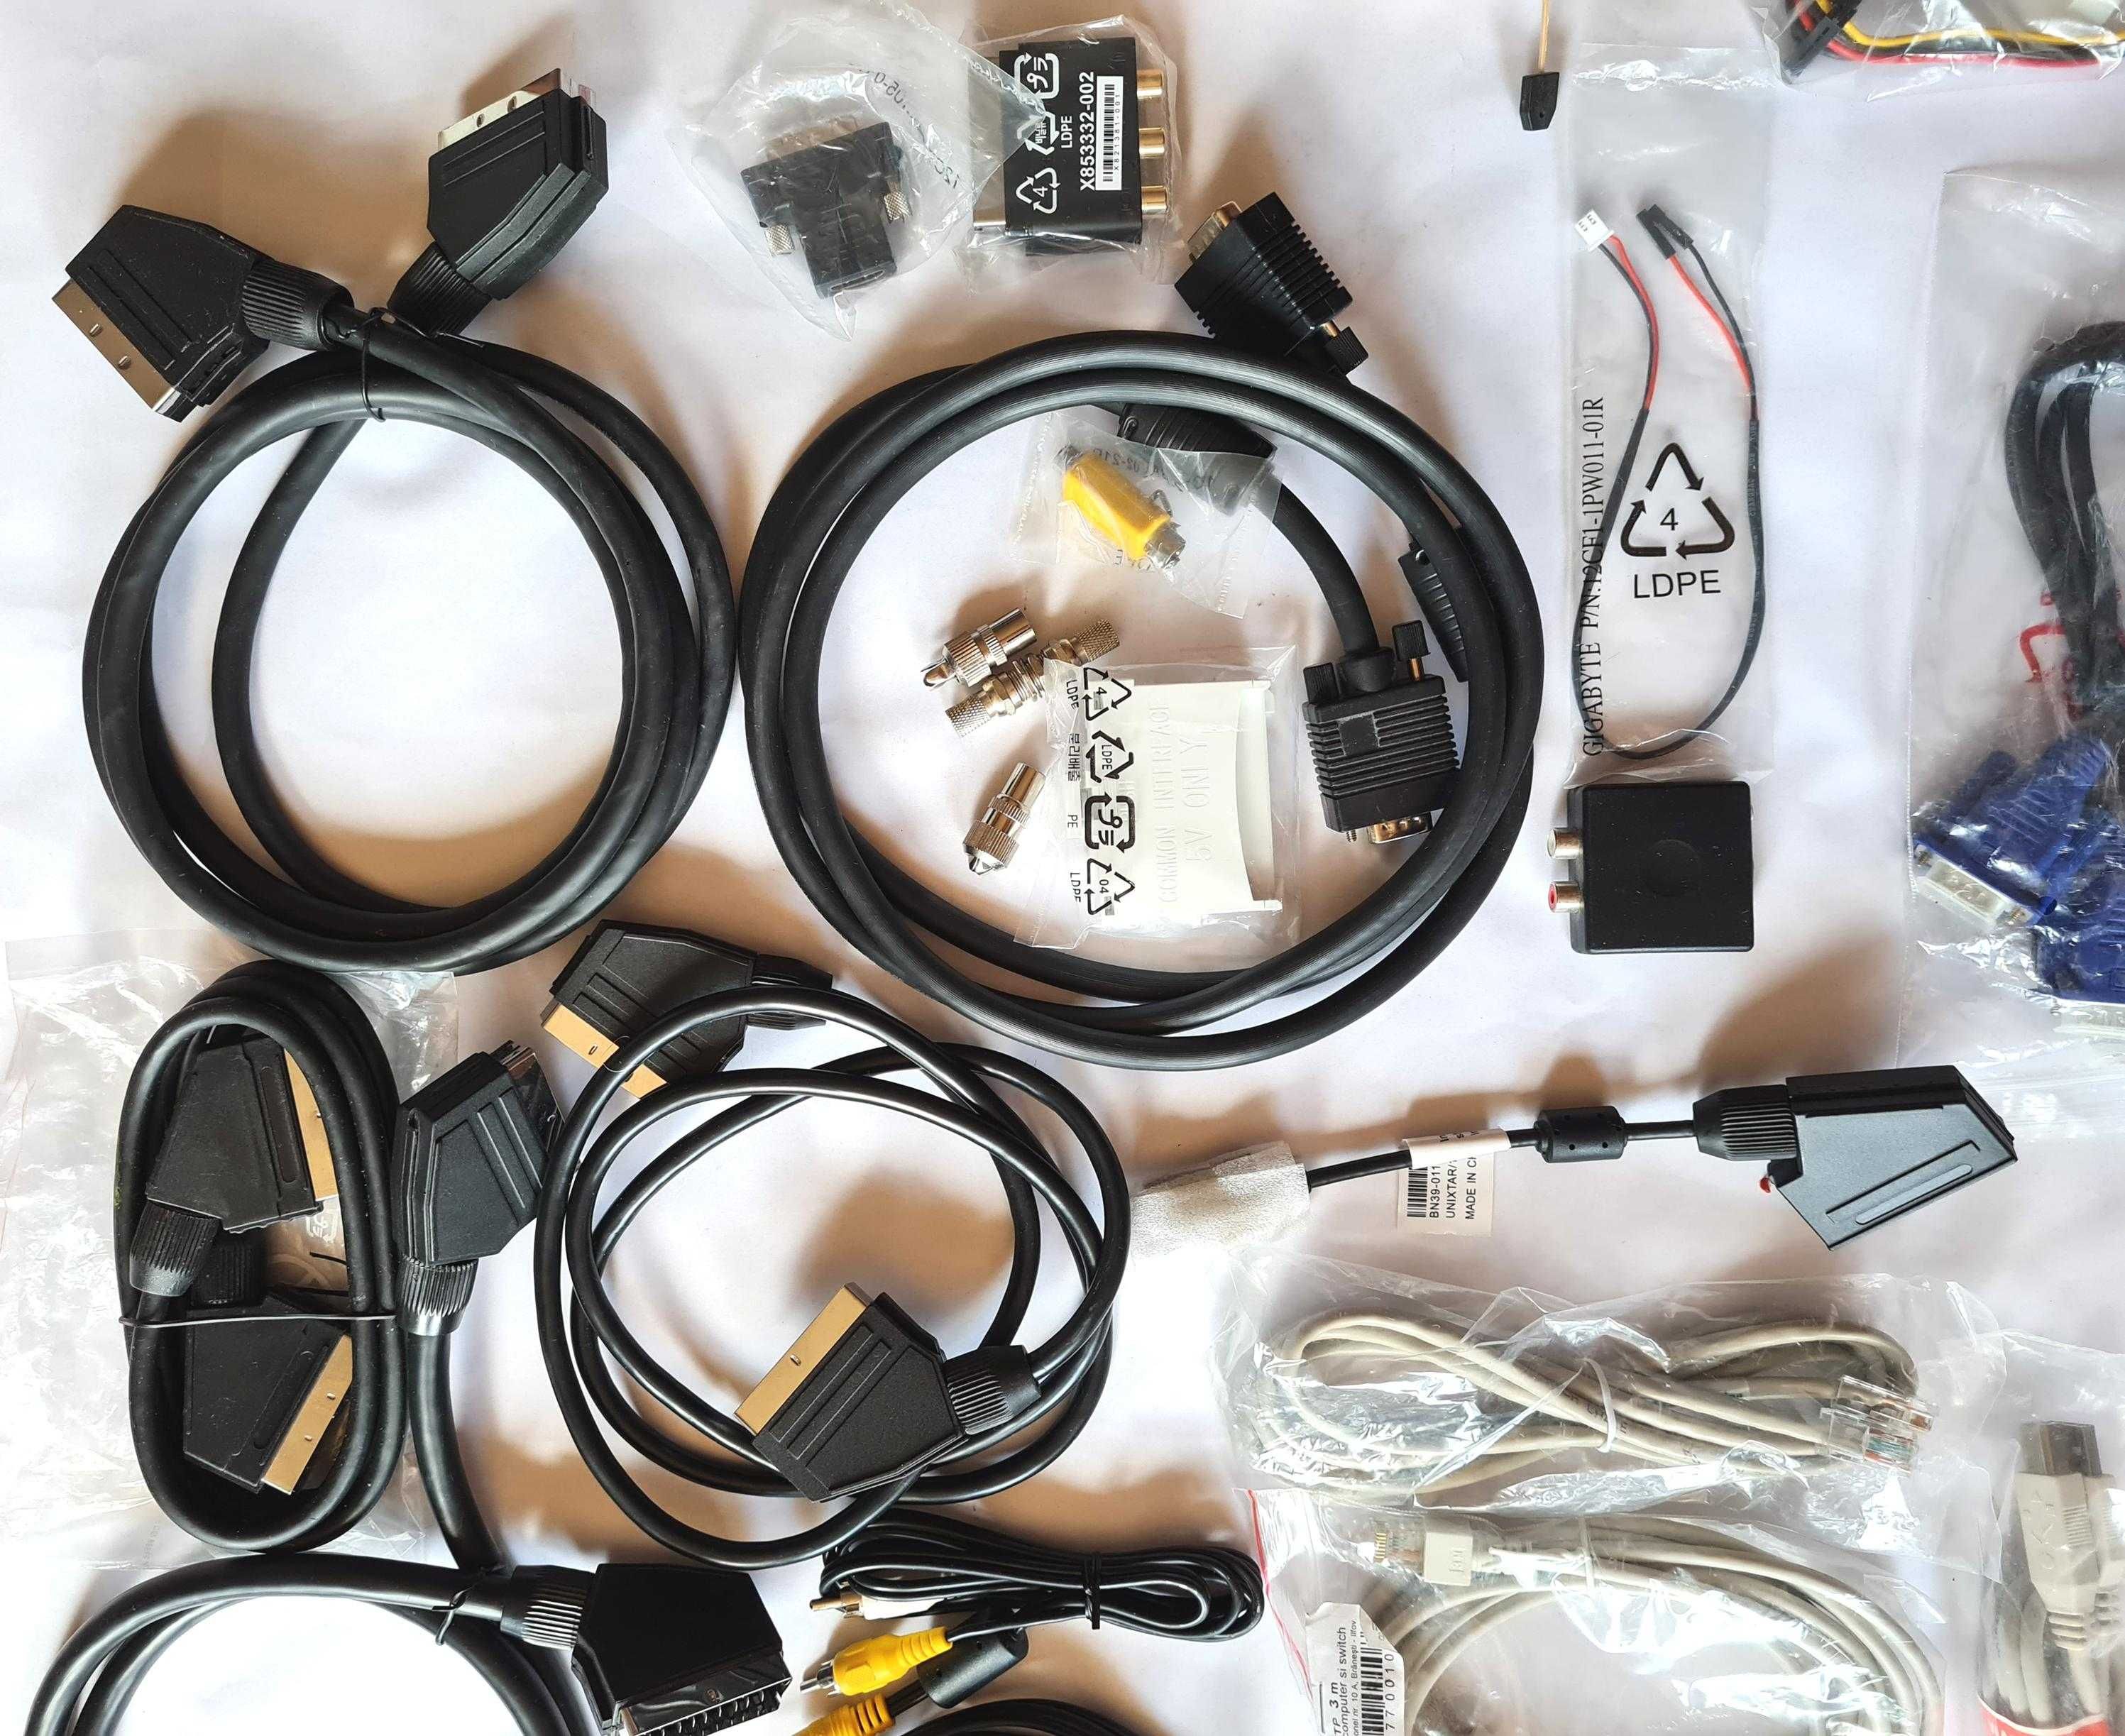 lot cabluri și diverse componente pentru PC, noi sau nefolosite